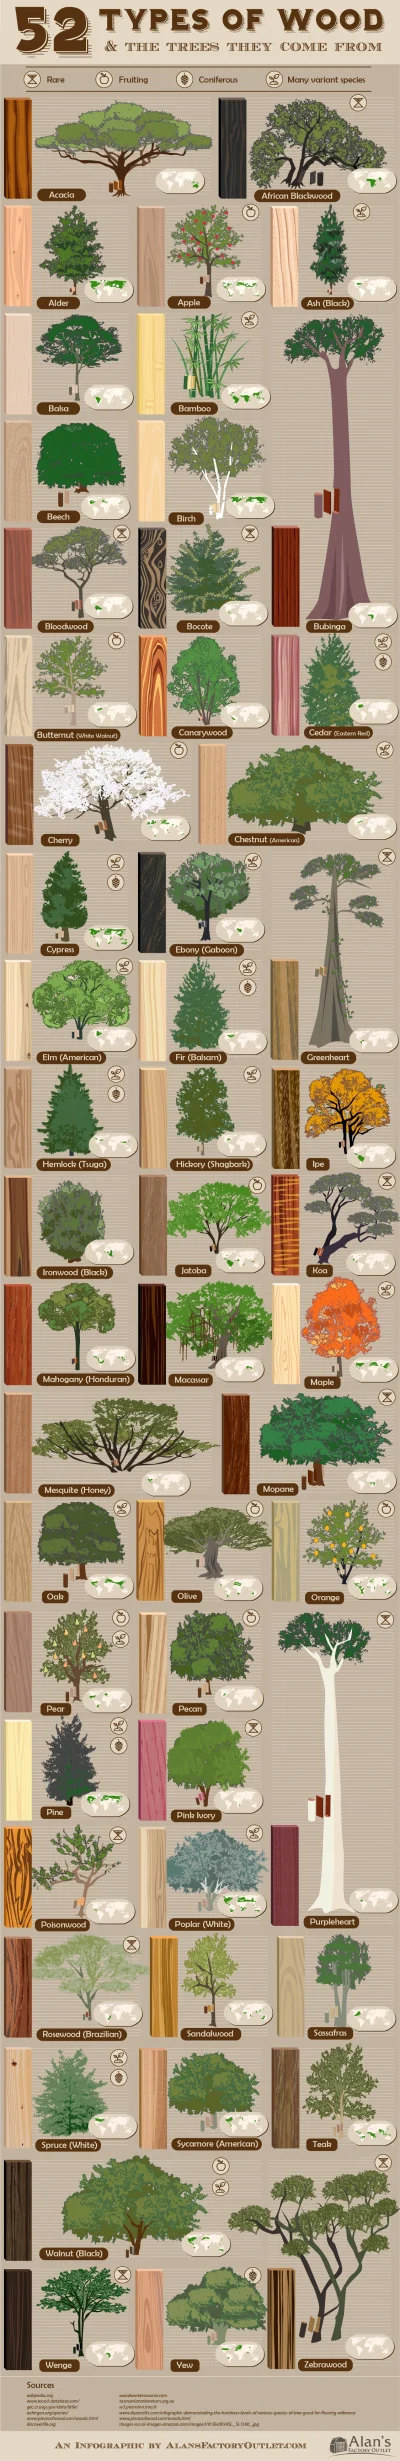 Rimfire - Ilustracja pokazująca różne gatunki drzew i gdzie występują. Jest tutaj jak...